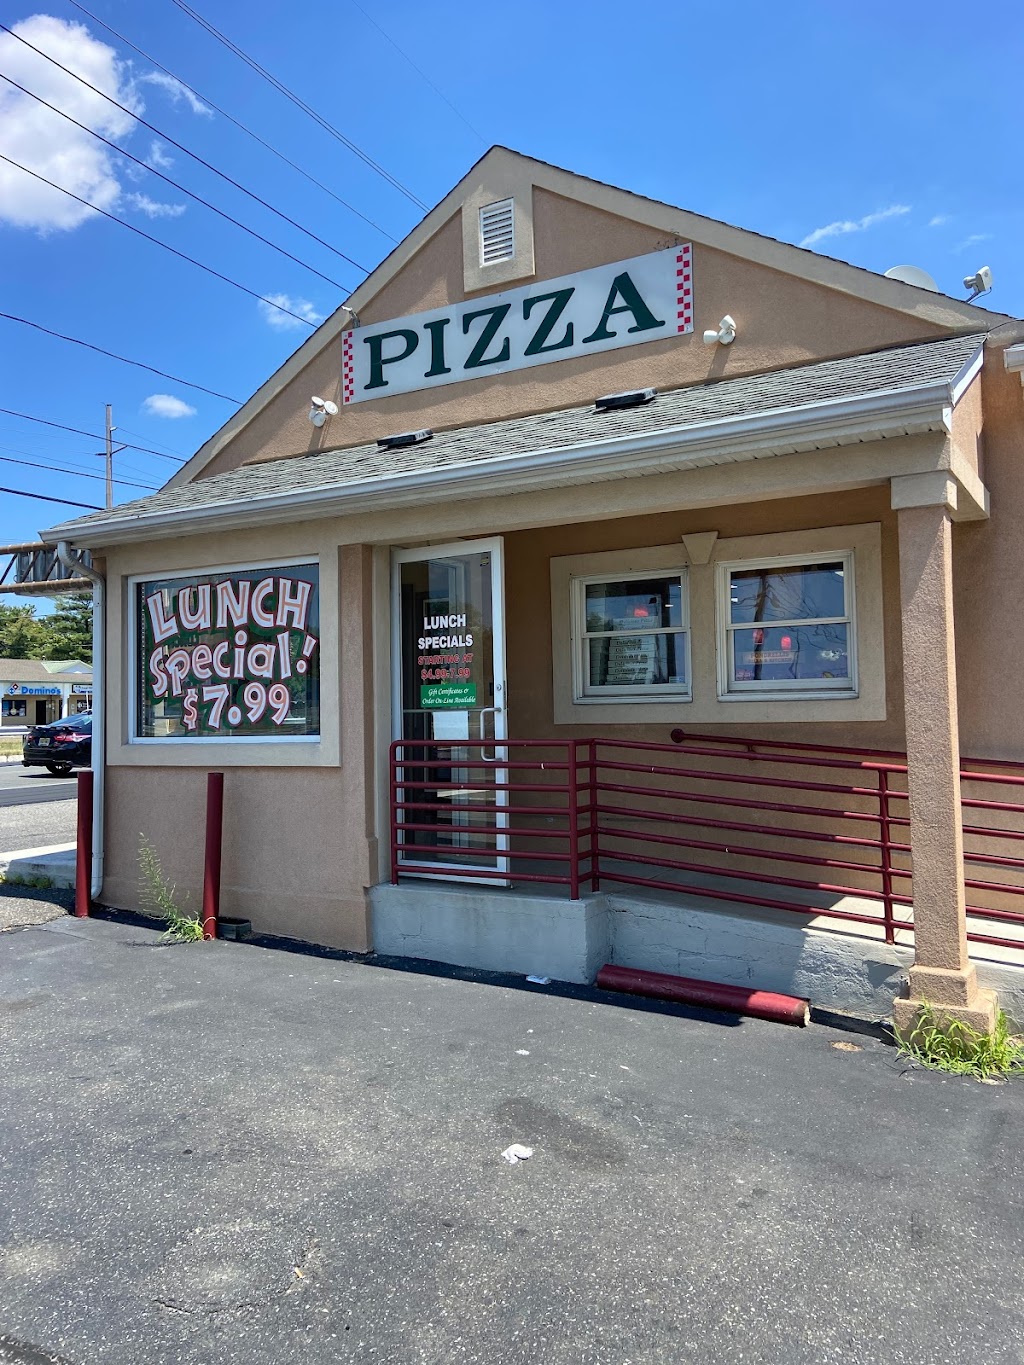 Pondrellis Pizza And Kitchen | 1500 NJ-37, Toms River, NJ 08753 | Phone: (732) 270-4444